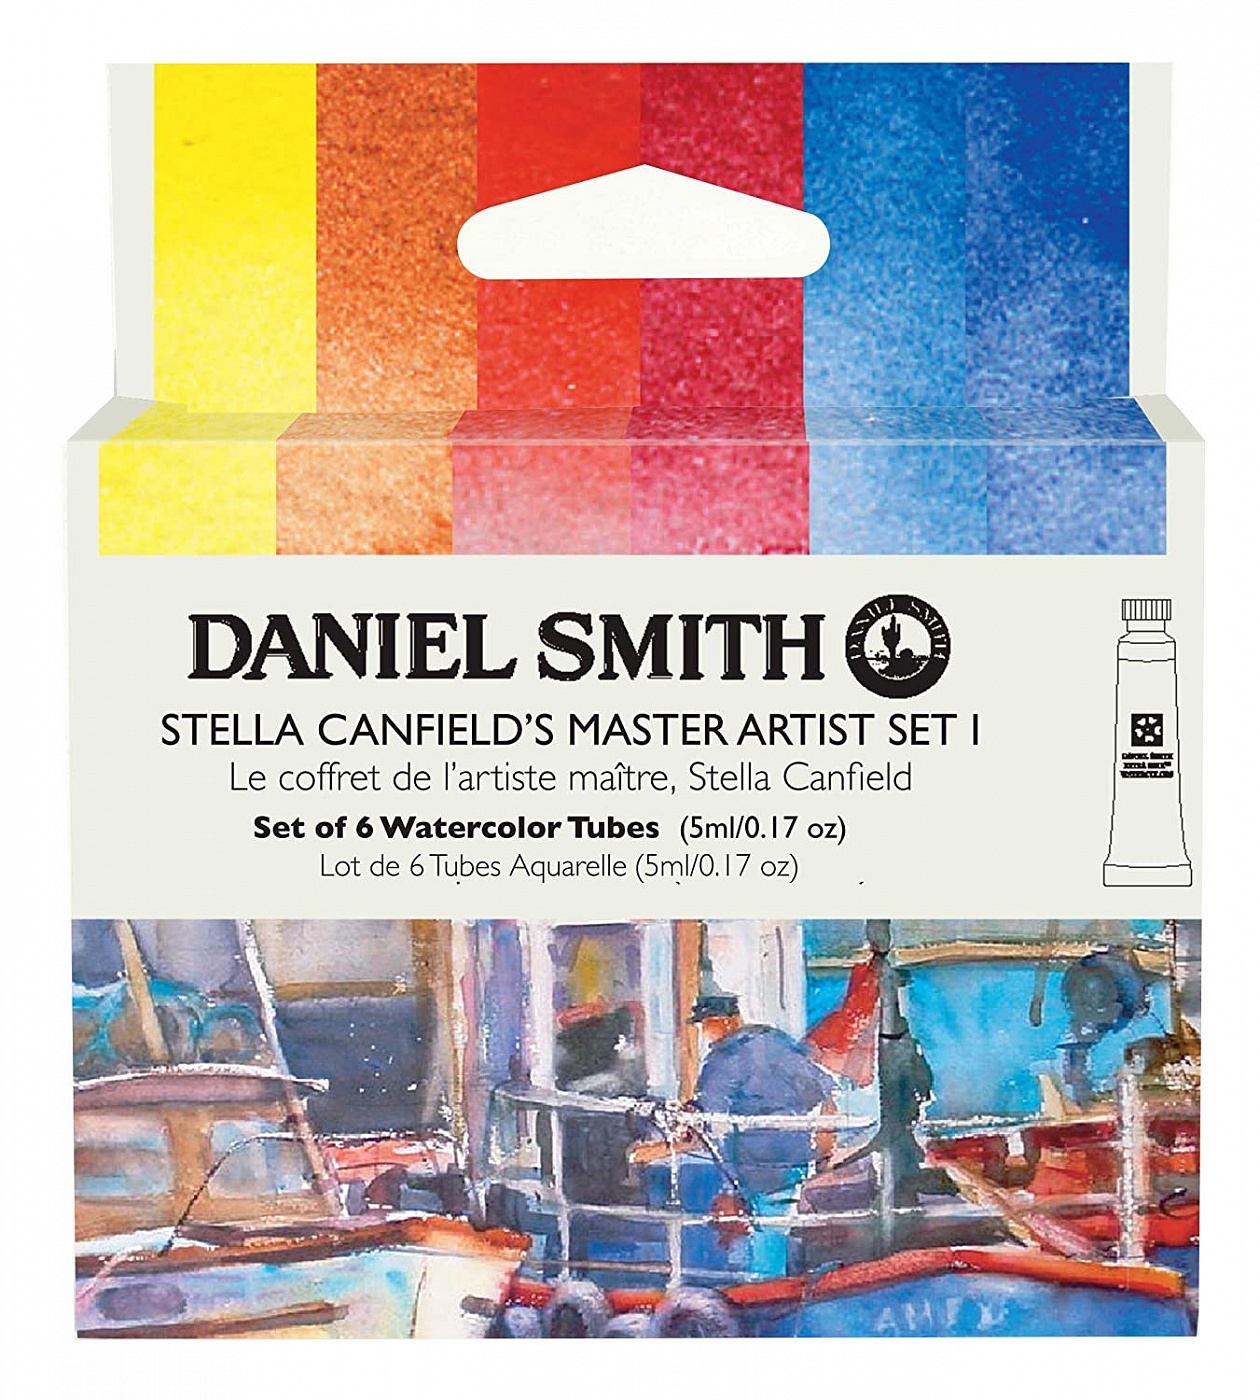 Набор акварели Daniel Smith Stella Canfield's Master Artist Set I, в тубах 6 цв*5 мл климт эпоха и жизнь венского художника